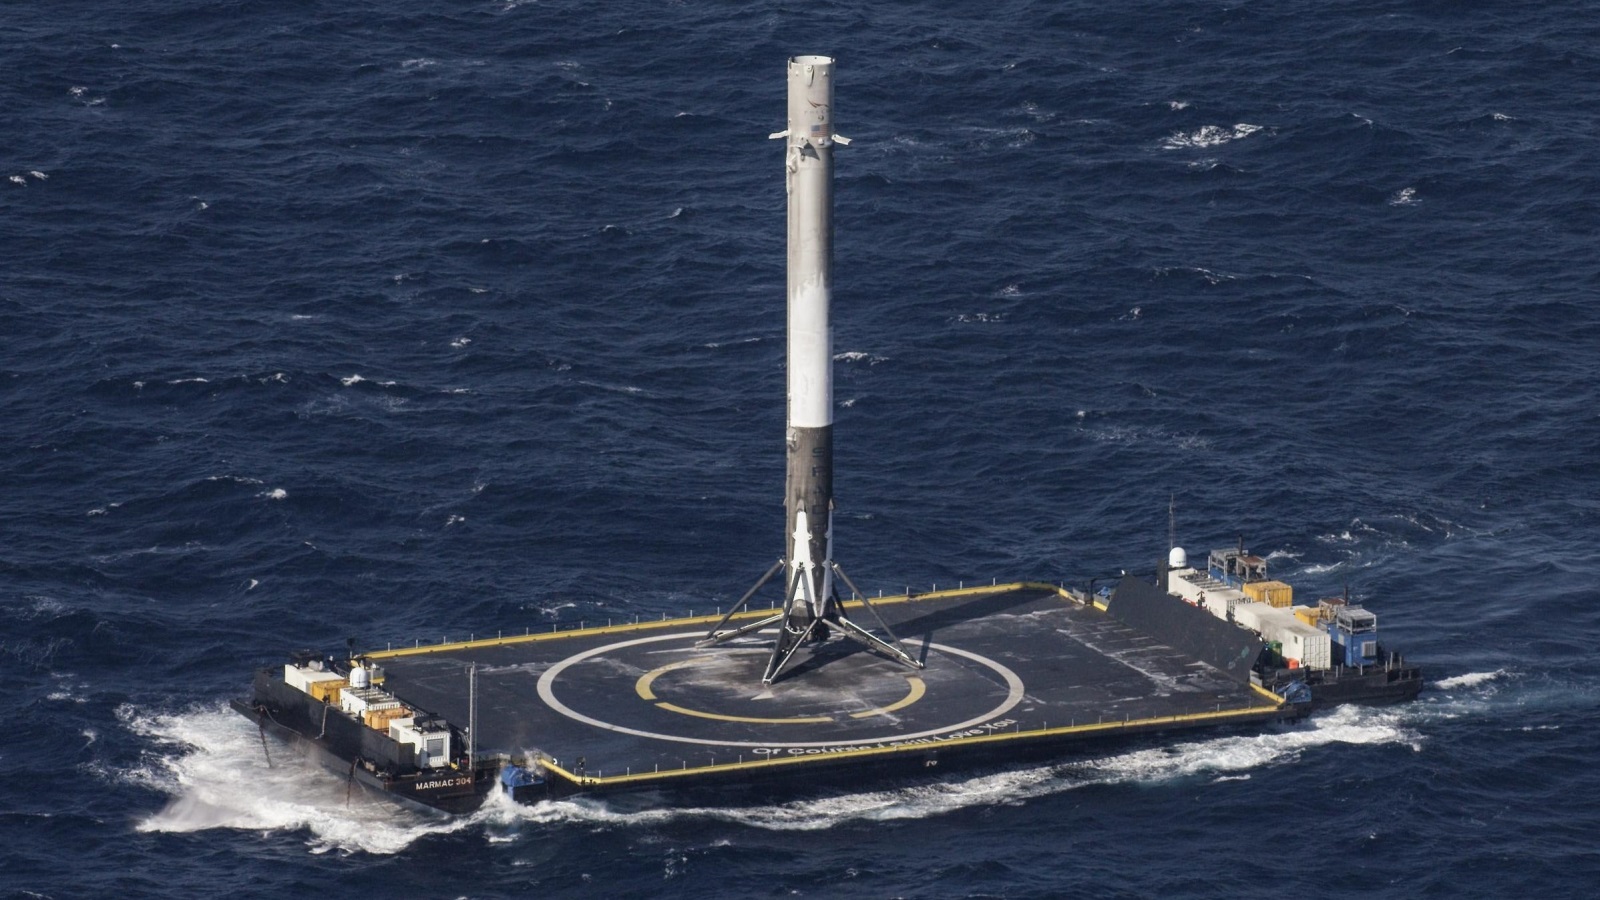 ‪صاروخ فالكون 9 لشركة سبيس إكس لحظة هبوطه بنجاح على منصة عائمة في المحيط‬ (الأوروبية)